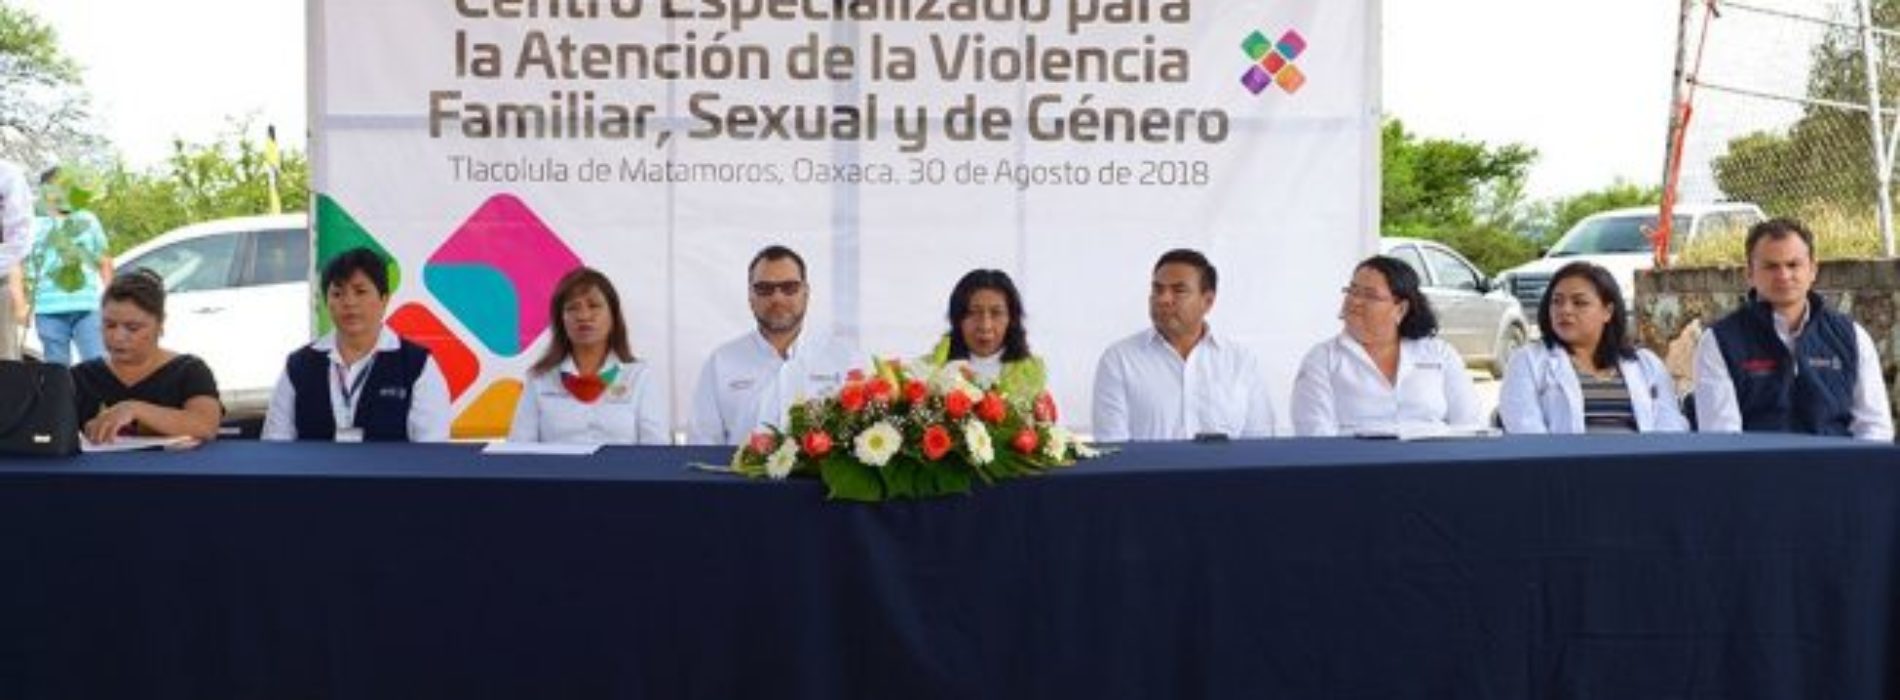 Abren Centro Especializado para la Prevención y Atención de
la Violencia de Género